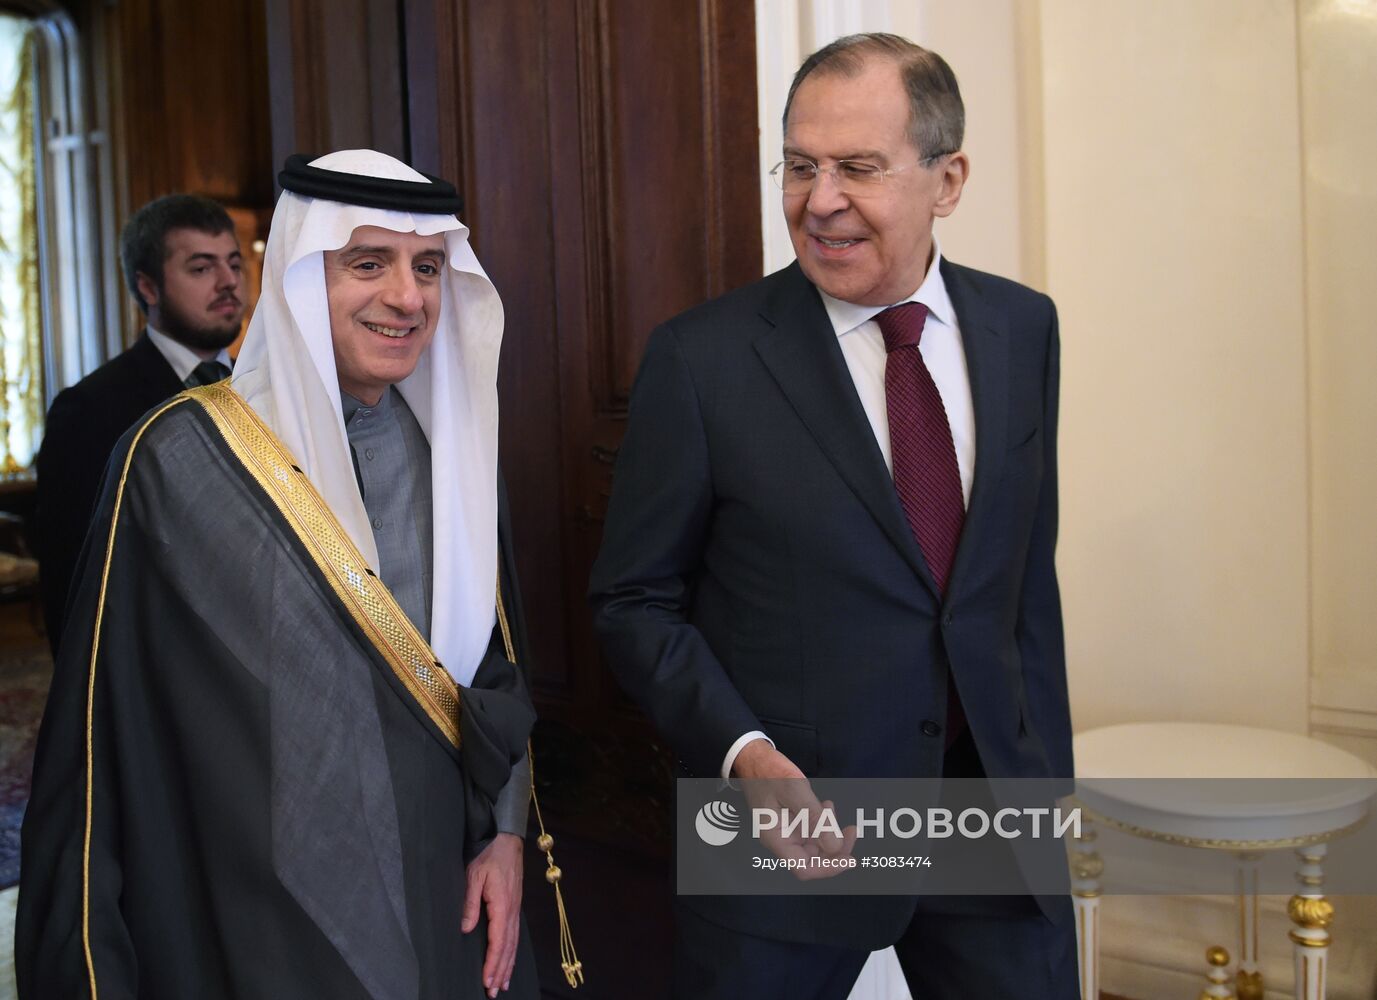 Встреча глав МИД РФ и Саудовской Аравии С. Лаврова и А. Аль-Джубейра